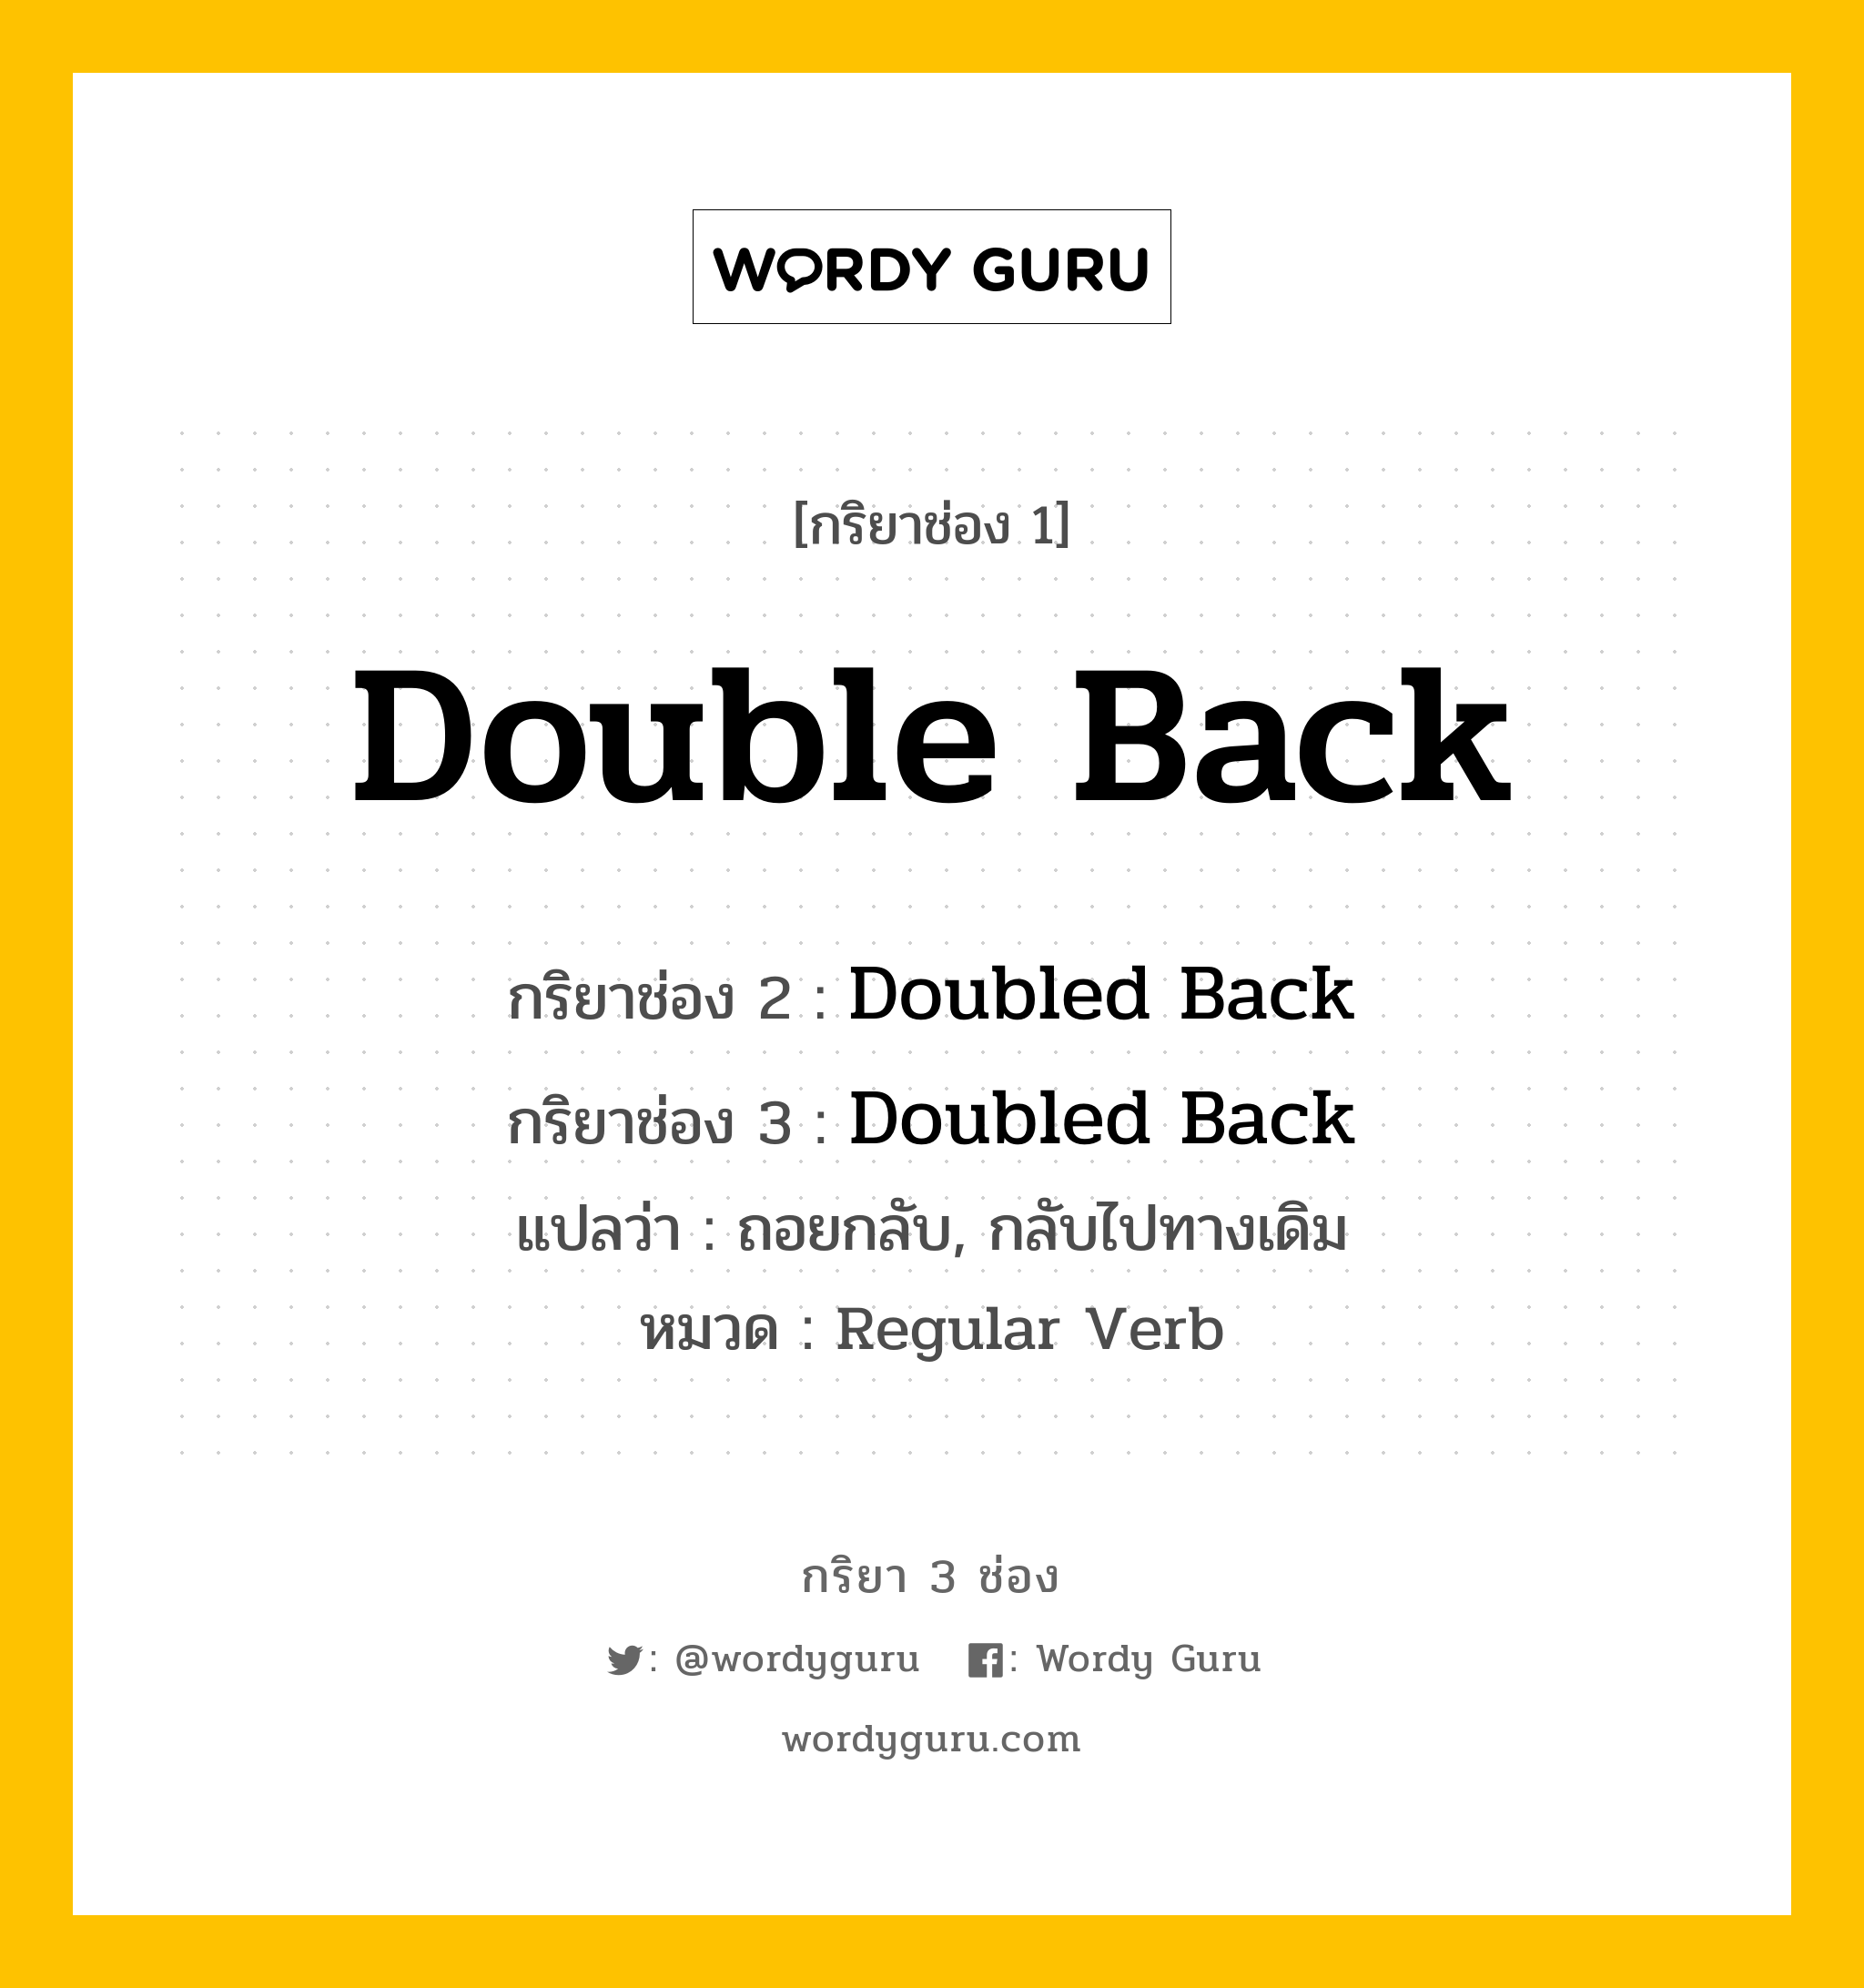 กริยา 3 ช่อง ของ Double Back คืออะไร? มาดูคำอ่าน คำแปลกันเลย, กริยาช่อง 1 Double Back กริยาช่อง 2 Doubled Back กริยาช่อง 3 Doubled Back แปลว่า ถอยกลับ, กลับไปทางเดิม หมวด Regular Verb หมวด Regular Verb